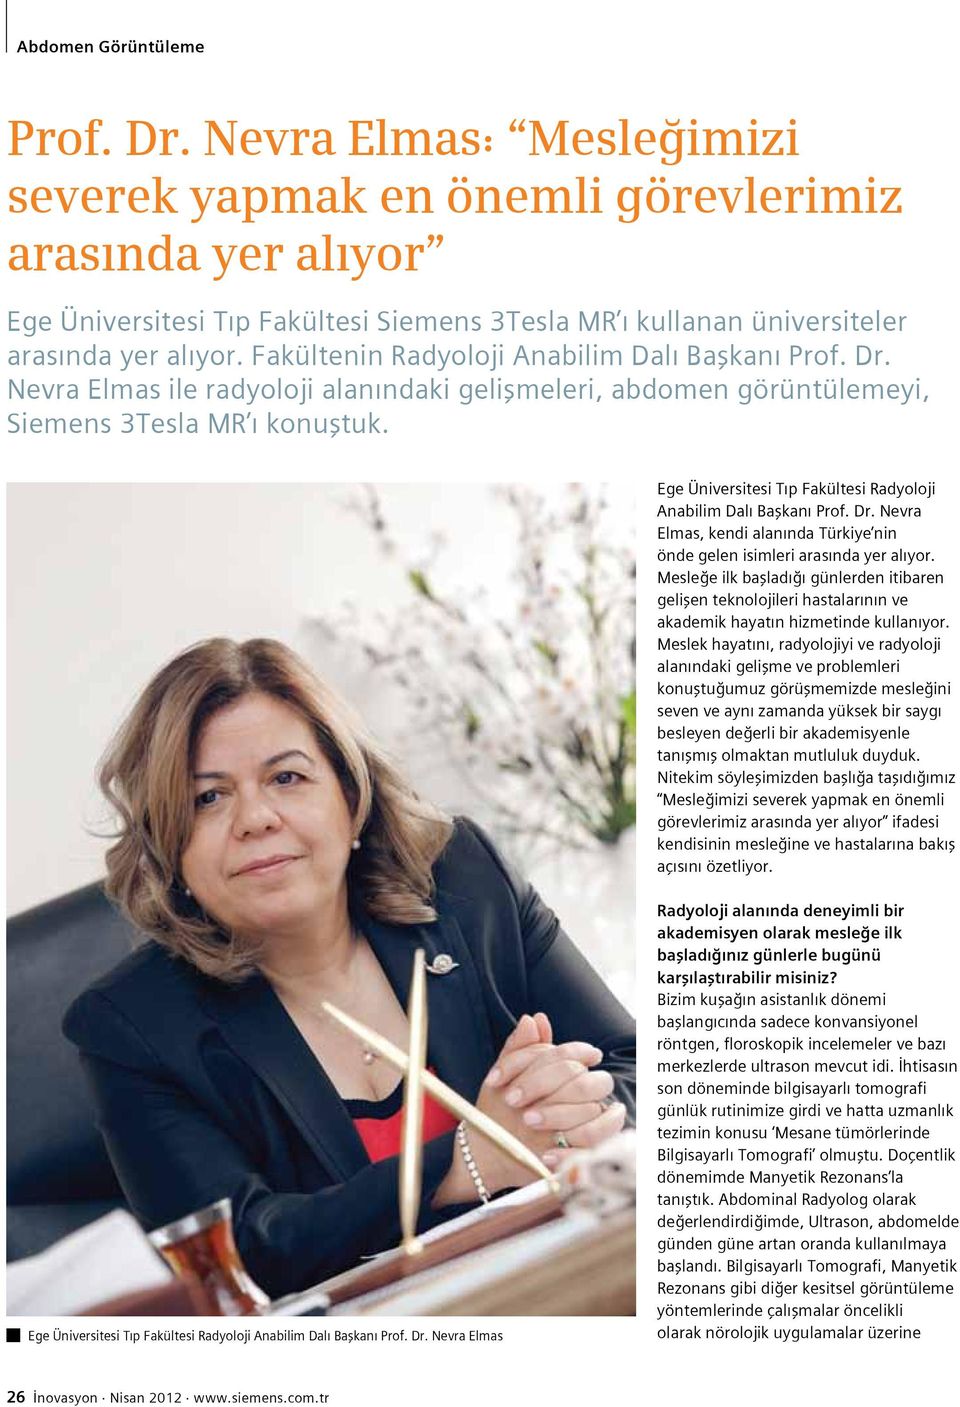 Ege Üniversitesi Tıp Fakültesi Radyoloji Anabilim Dalı Başkanı Prof. Dr. Nevra Elmas, kendi alanında Türkiye nin önde gelen isimleri arasında yer alıyor.